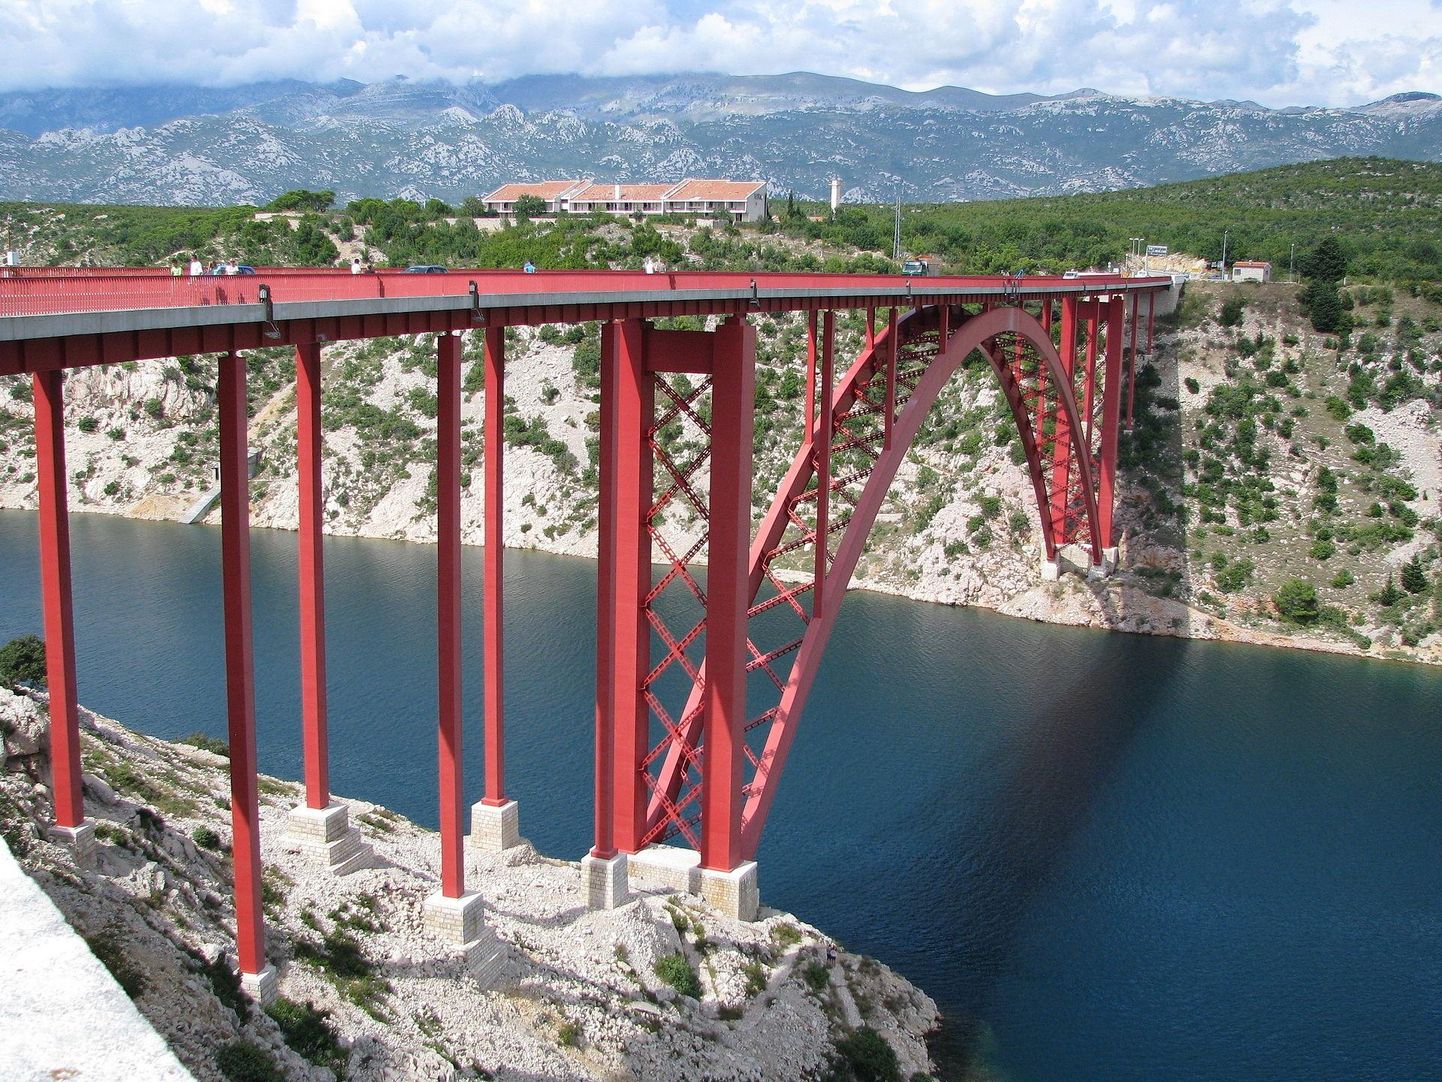 Maslenica sild Horvaatias, mida suletakse kümneid kordi aastas, sest boorad on liiga tugevad, et liiklus saaks seal jätkuda. Katsetamisel on tehnoloogiad, mis võiksid ioontuulte abil liiklust ohustavat boorat selle silla kohal tõrjuda.